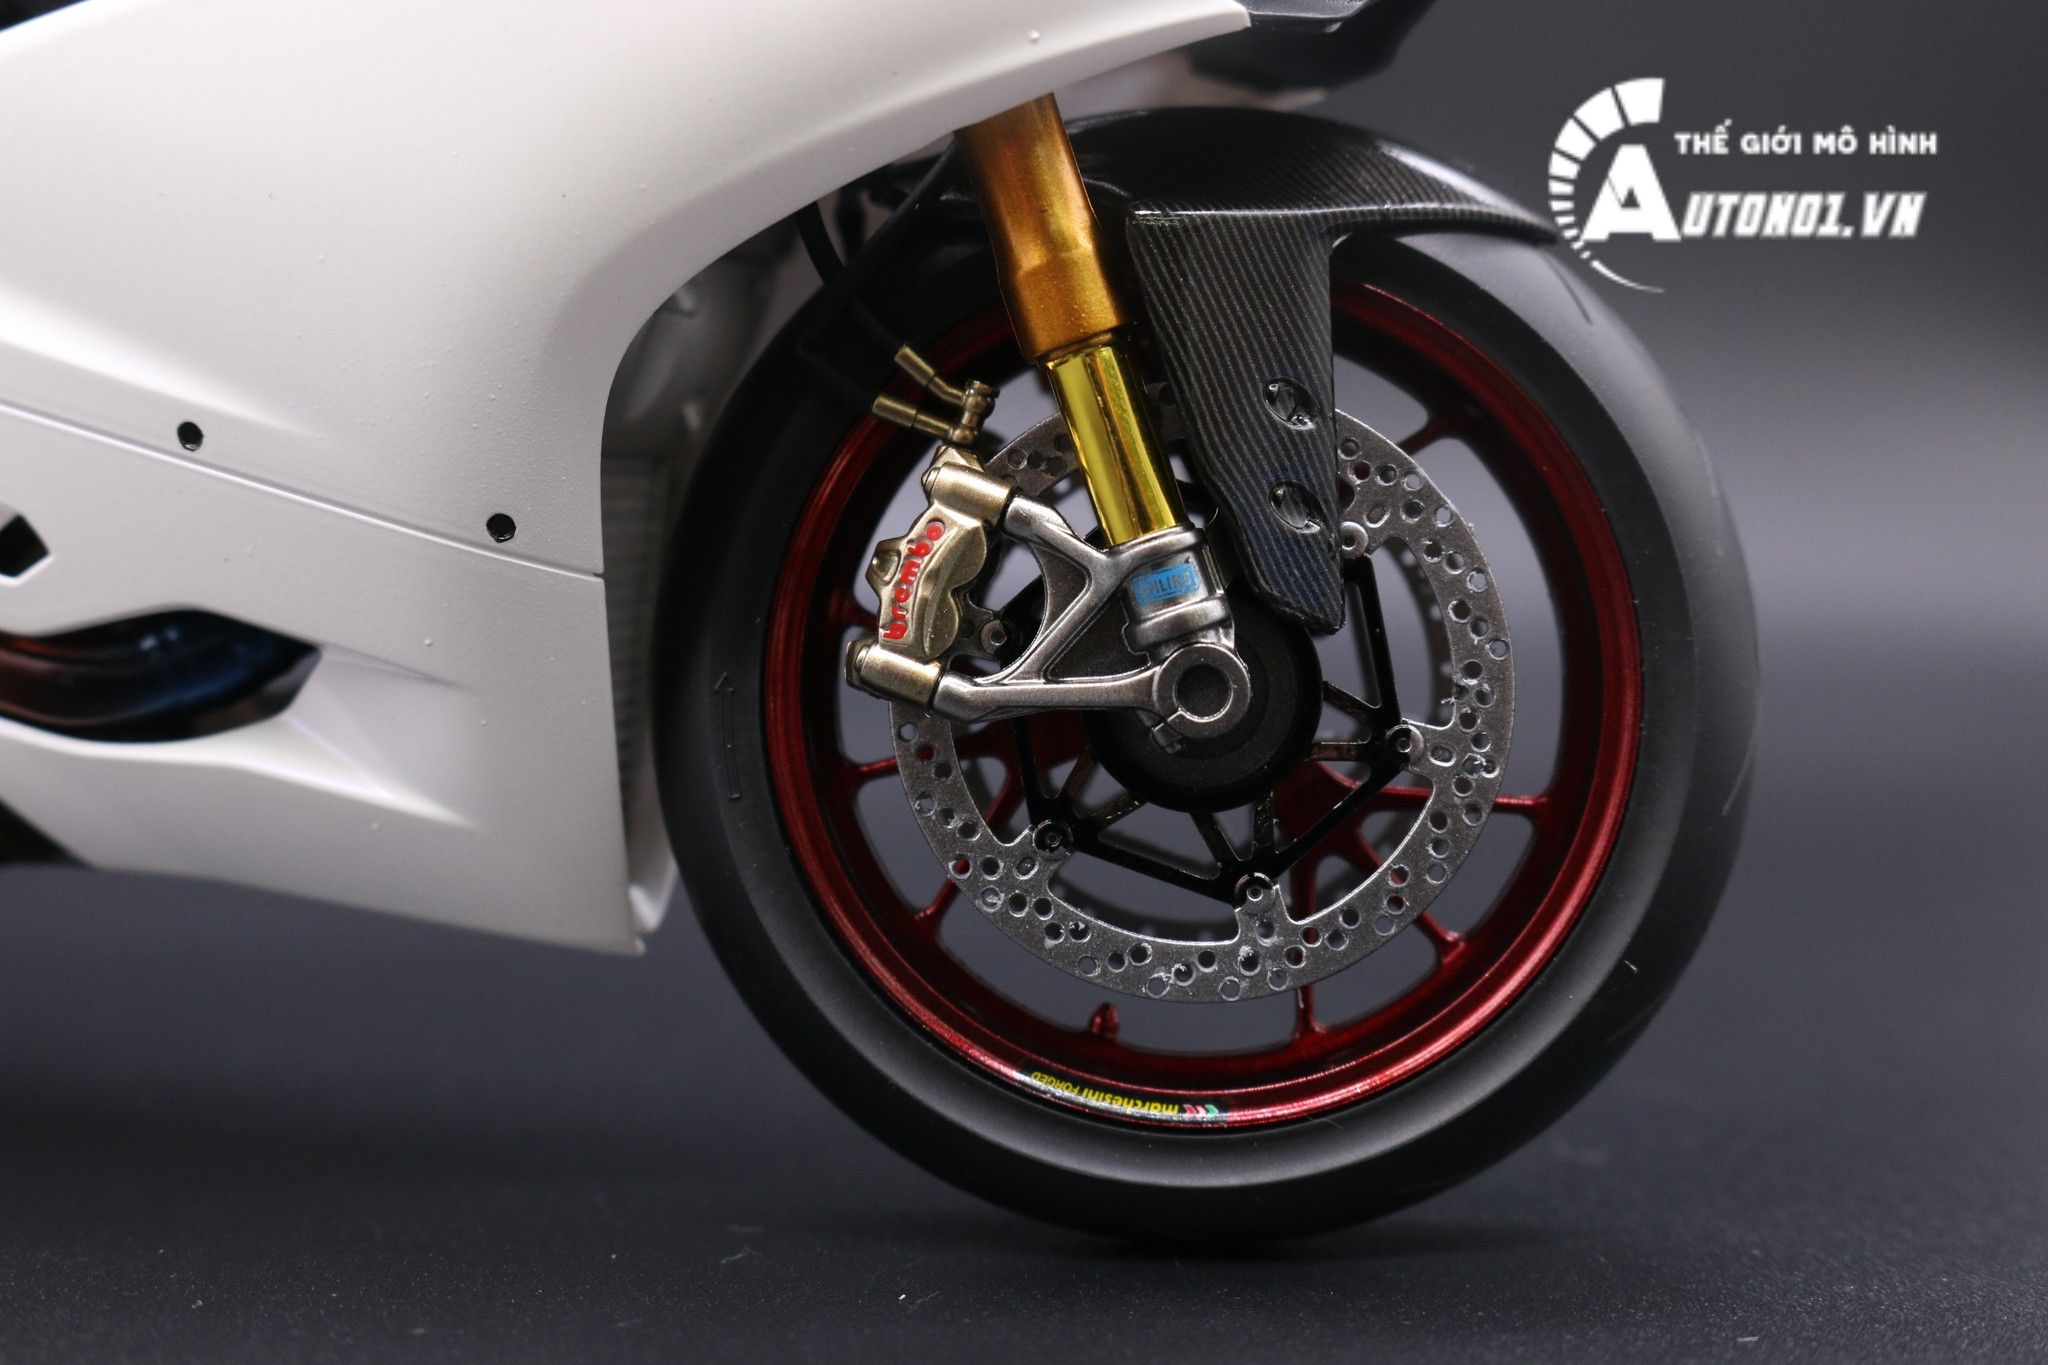  Mô hình xe cao cấp Ducati 1199 Panigale White Pearl Carbon 1:12 Tamiya D059 